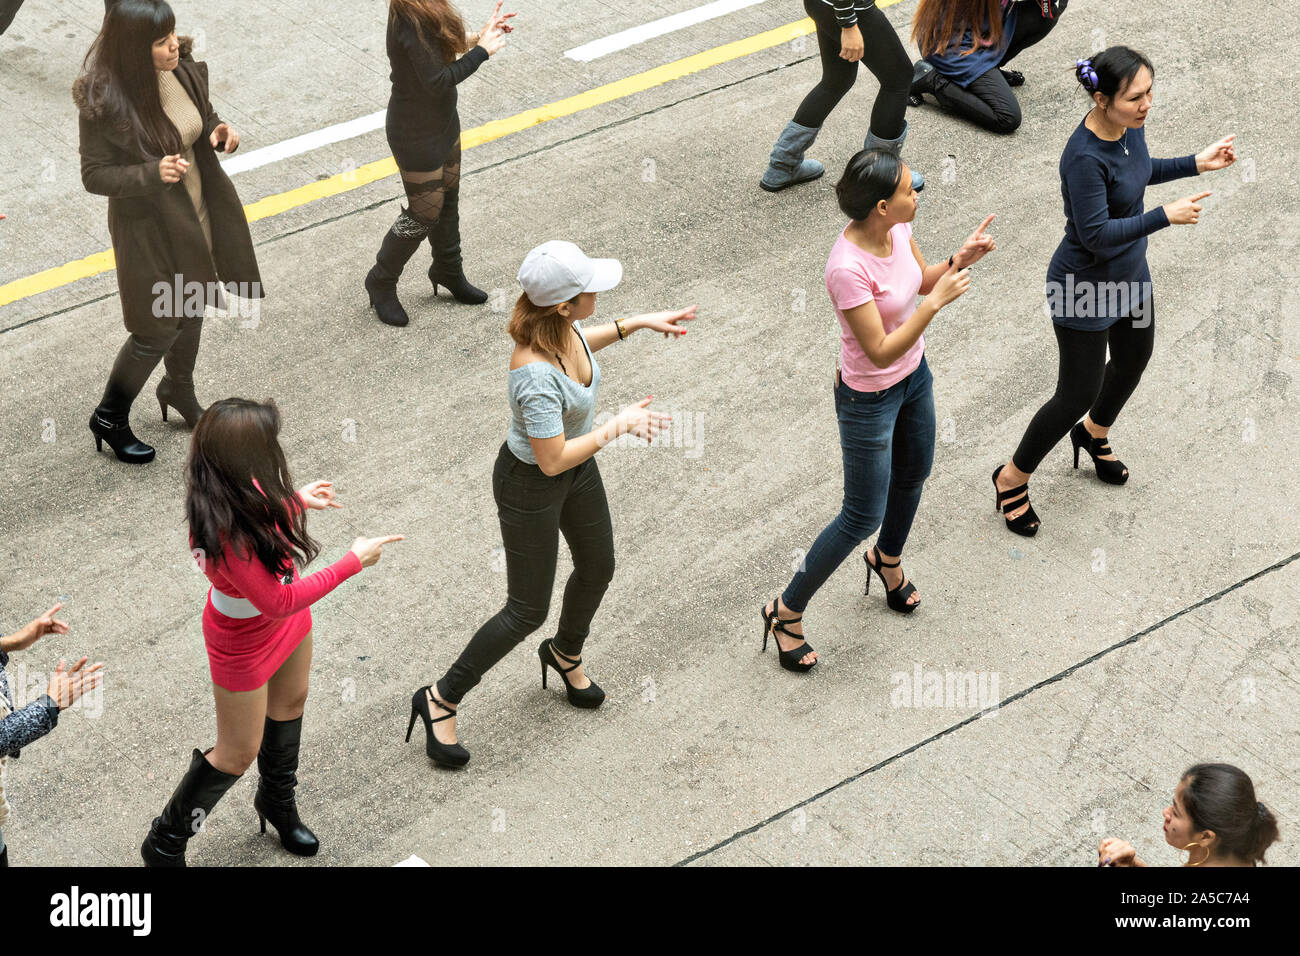 Philippinische Hausangestellte sammeln am Tag und eine improvisierte Line Dance in Central District, Hongkong halten. Etwa 130.000 philippinische Hausangestellte arbeiten in Hongkong und haben alle Sonntage aus. Stockfoto